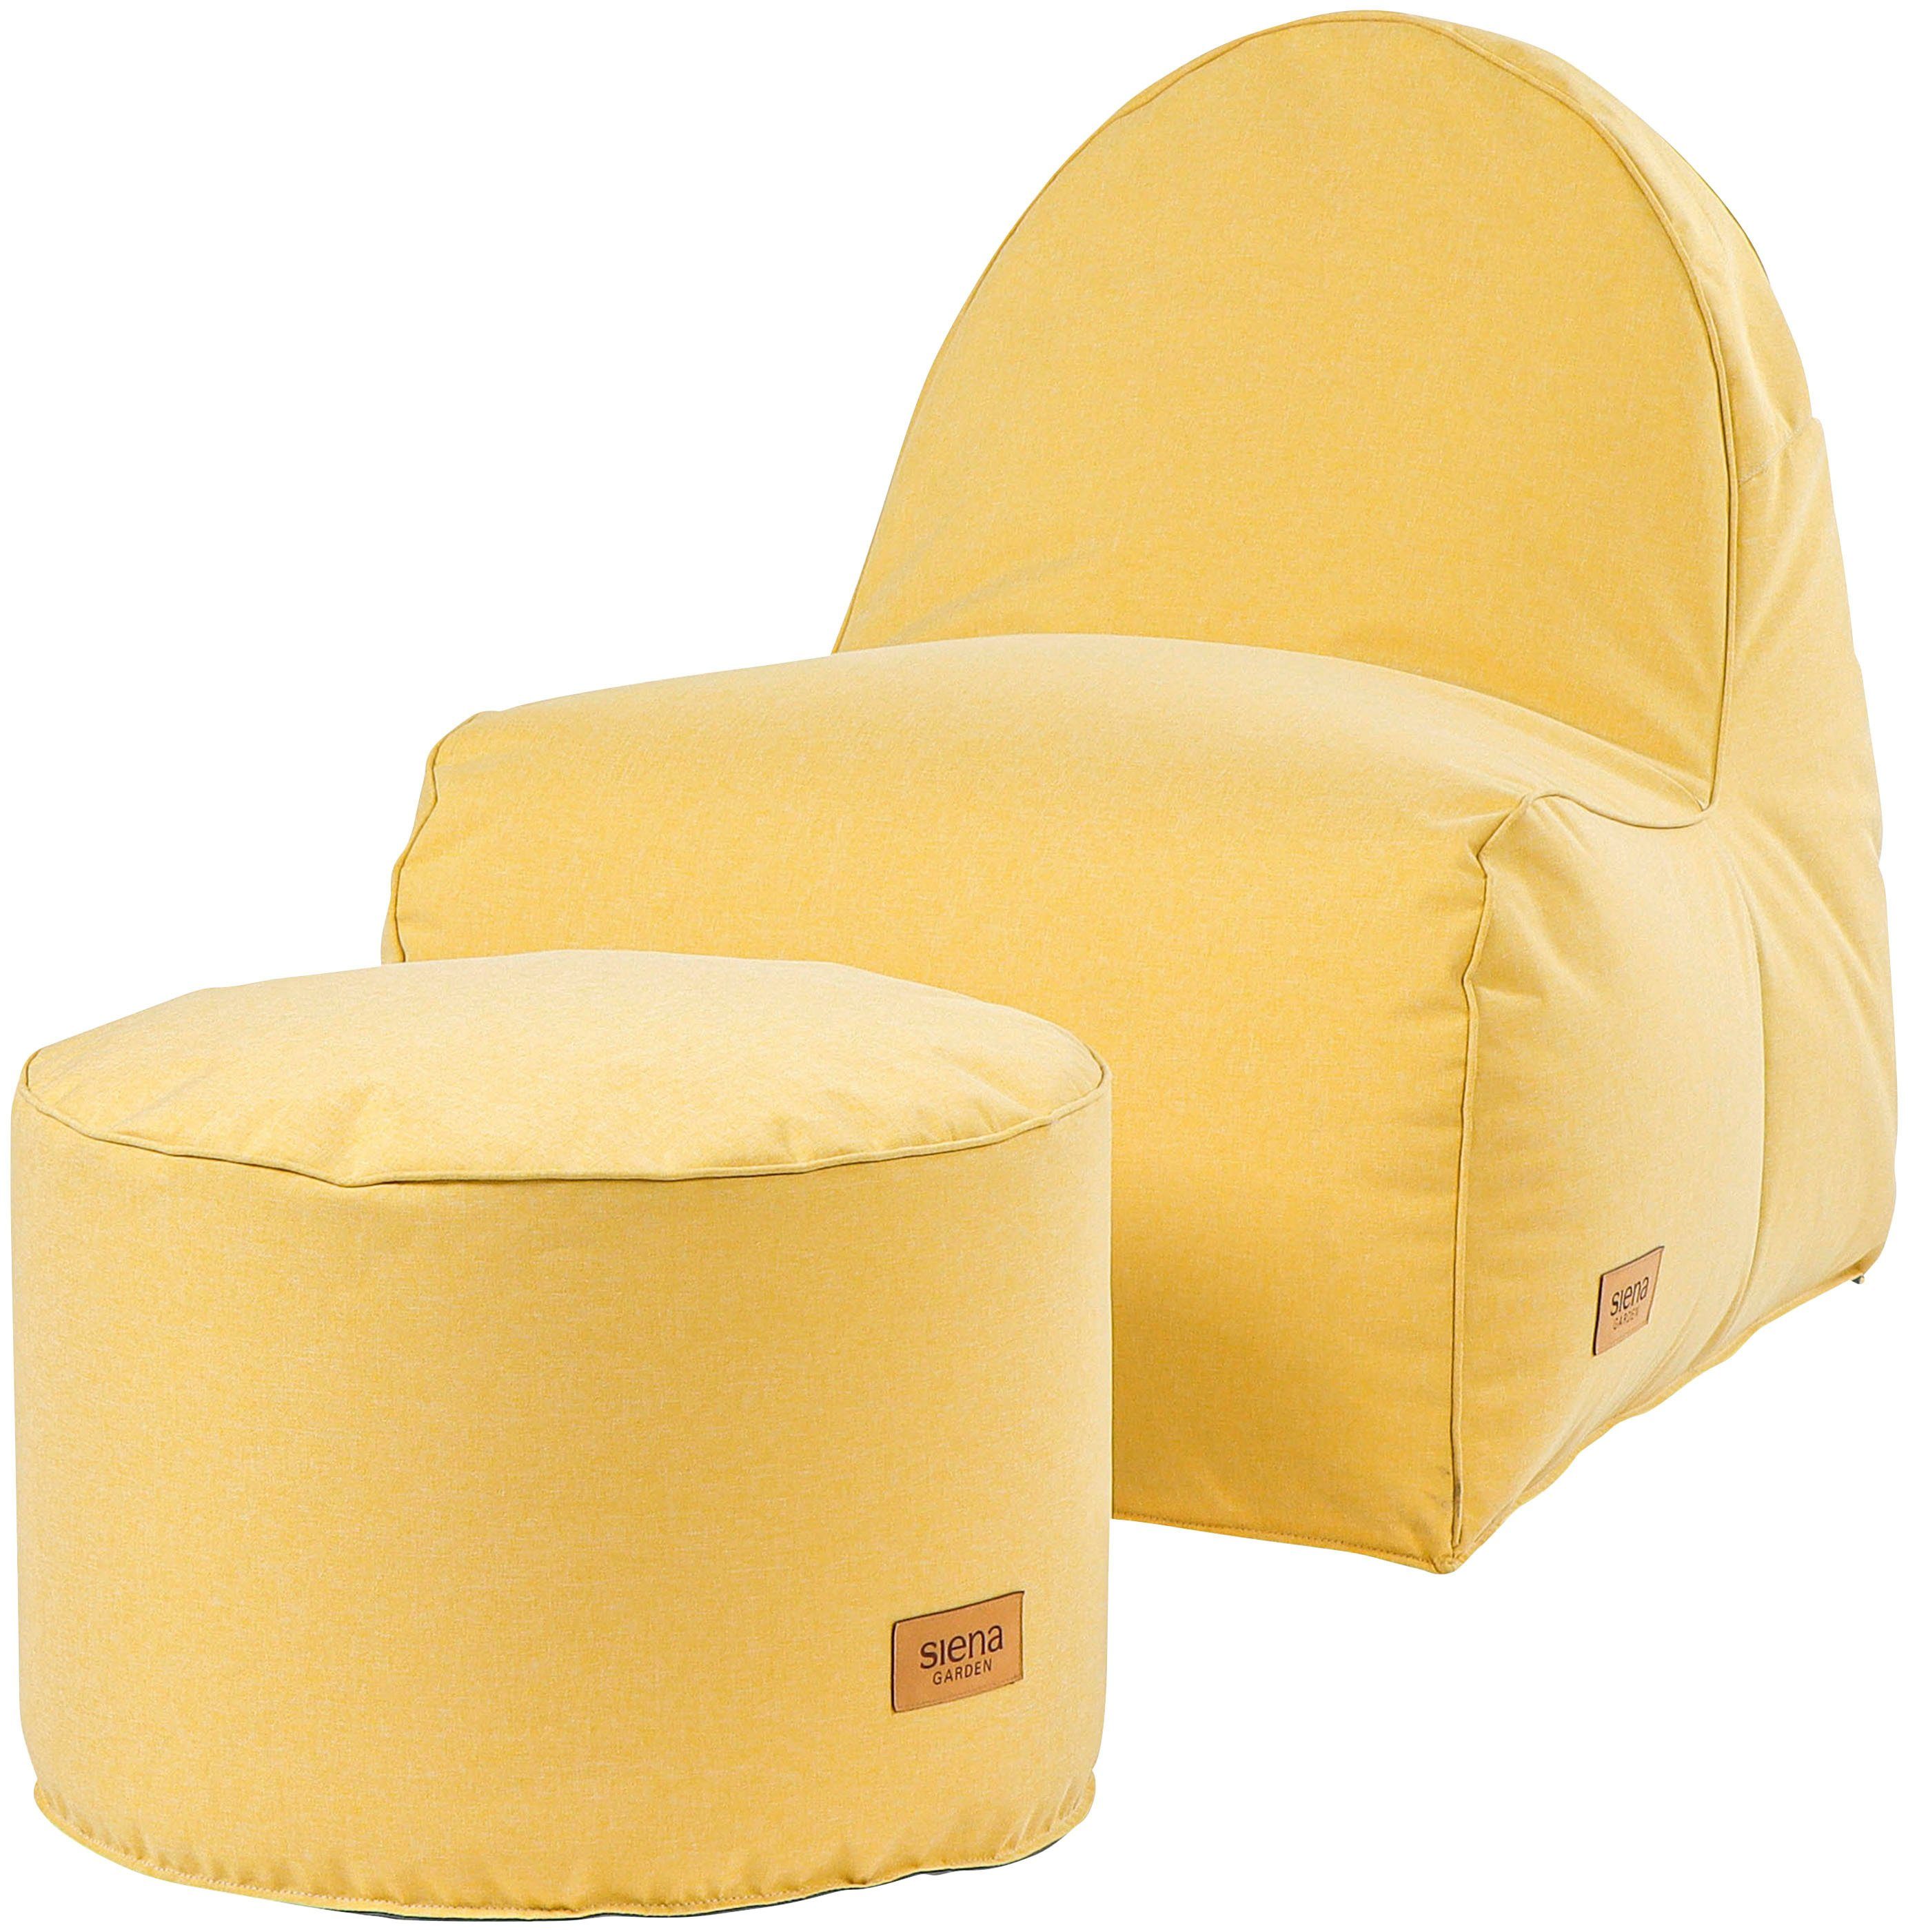 Siena Garden Sitzsack FLOW.U Round Ø60cm*H40cm, Indoor & Outdoor, in verschiedenen Farben erhältlich lemonjuice